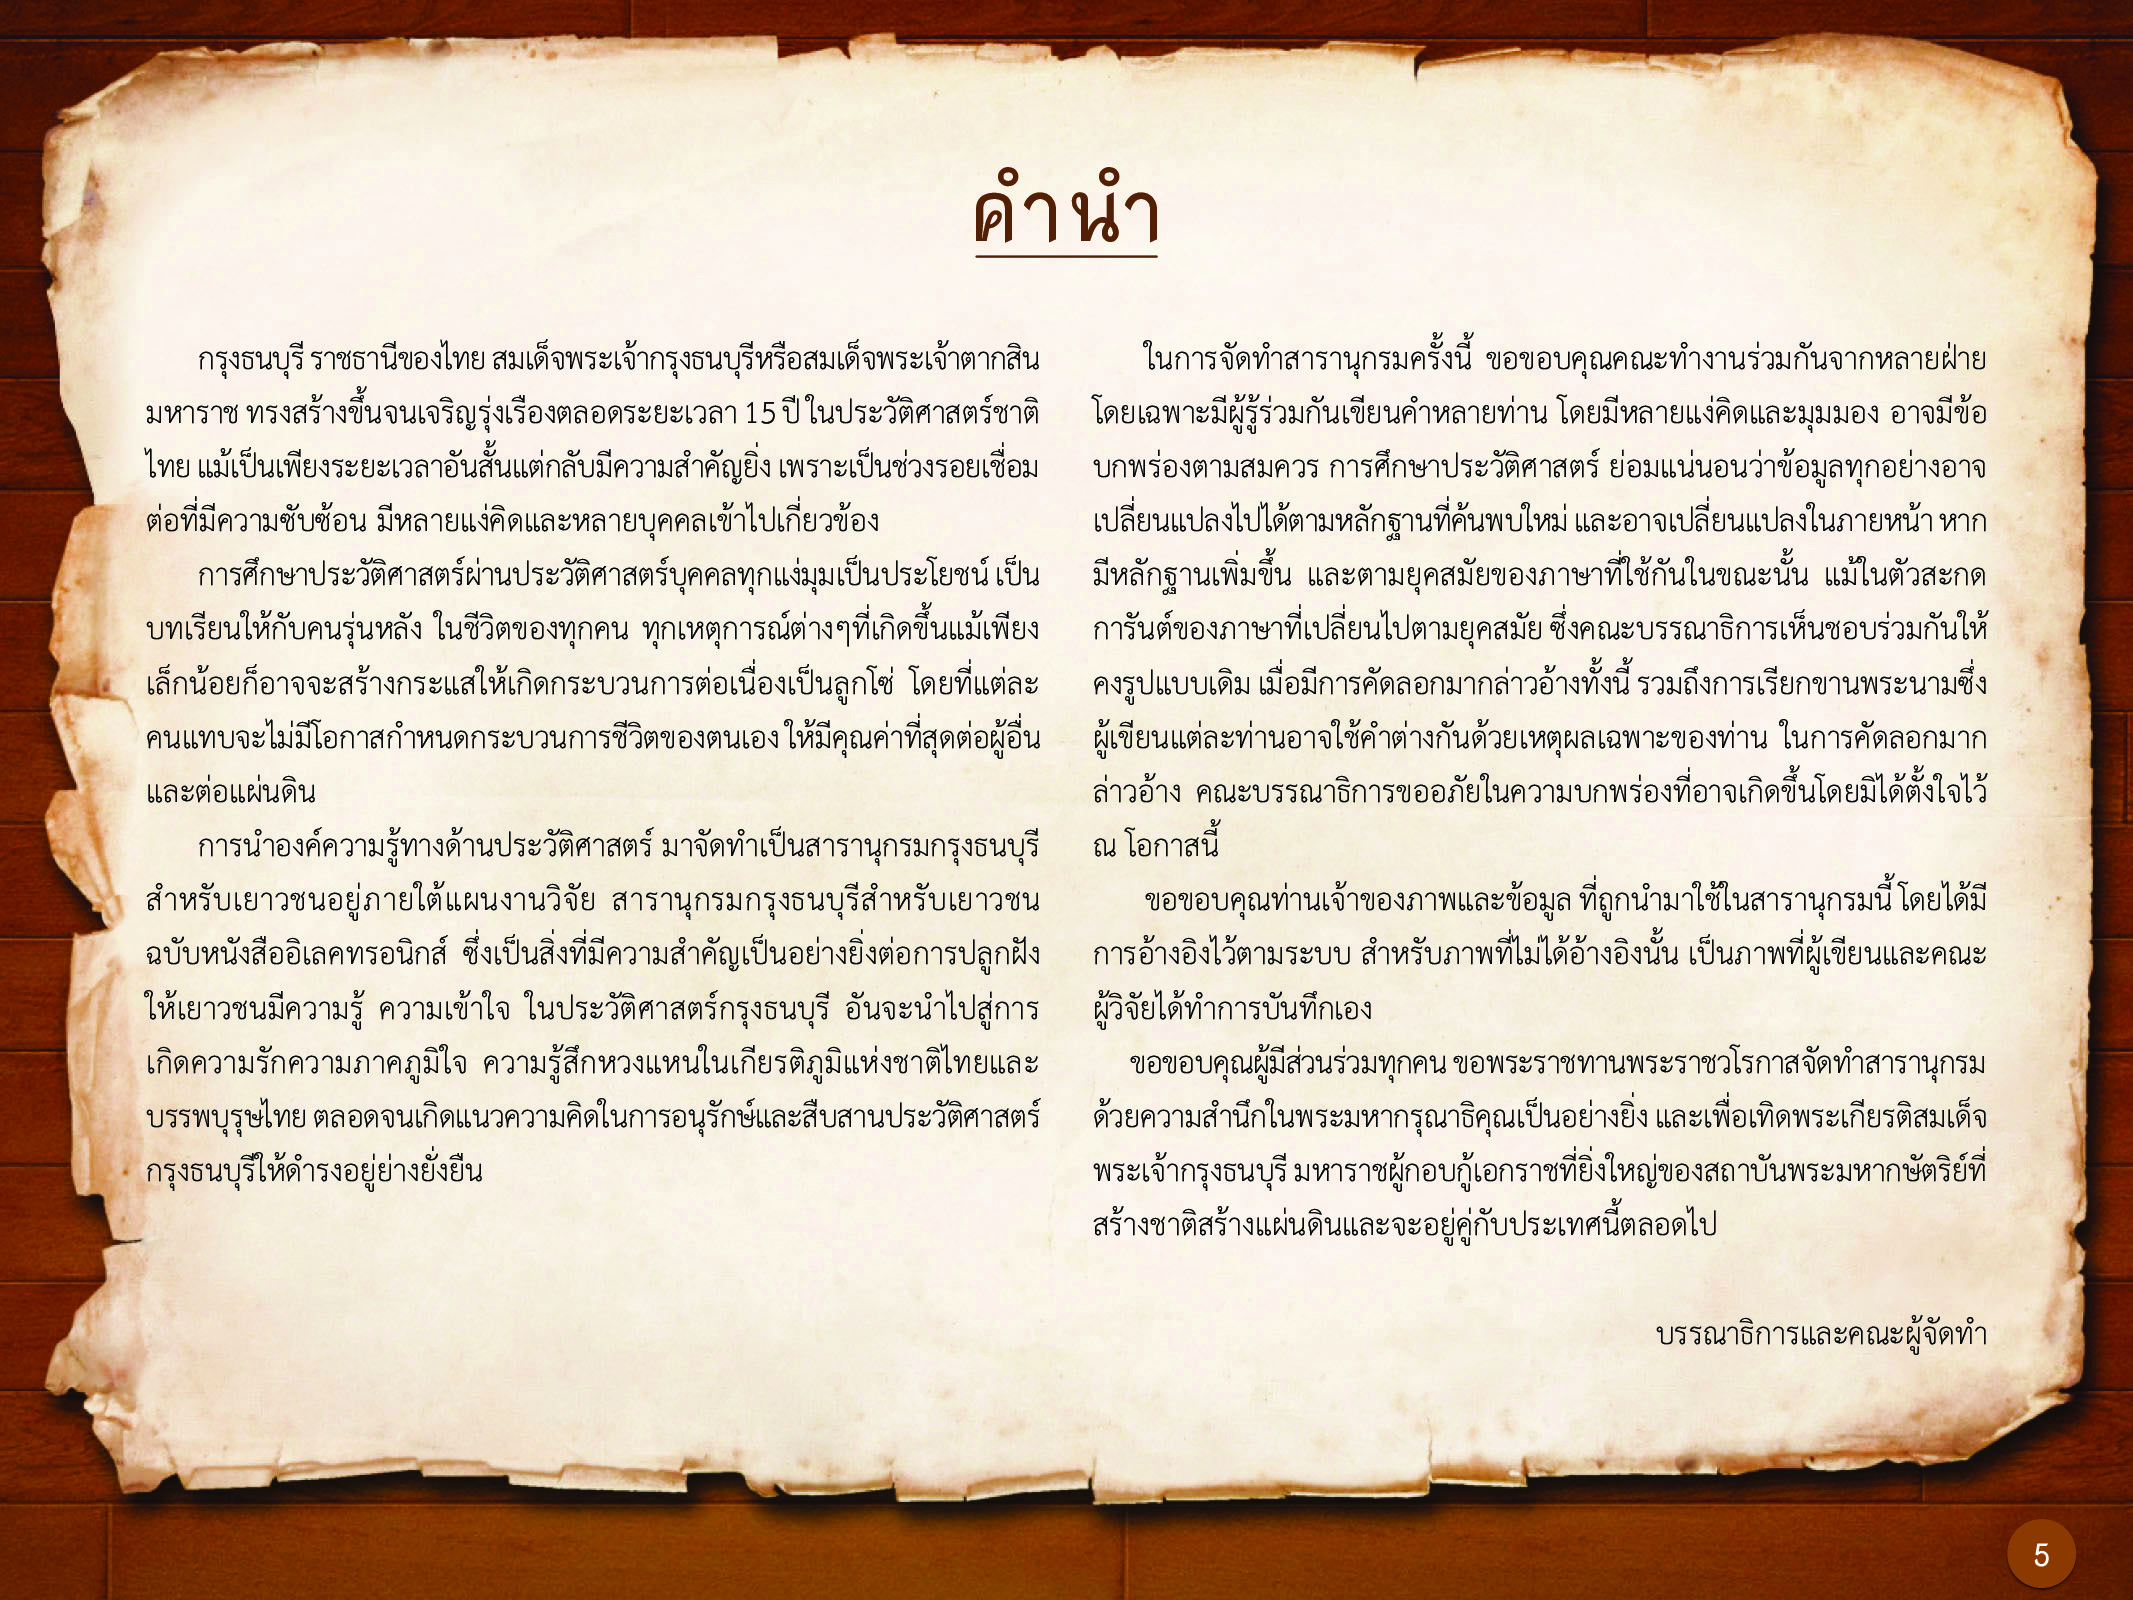 ประวัติศาสตร์กรุงธนบุรี ./images/history_dhonburi/5.jpg